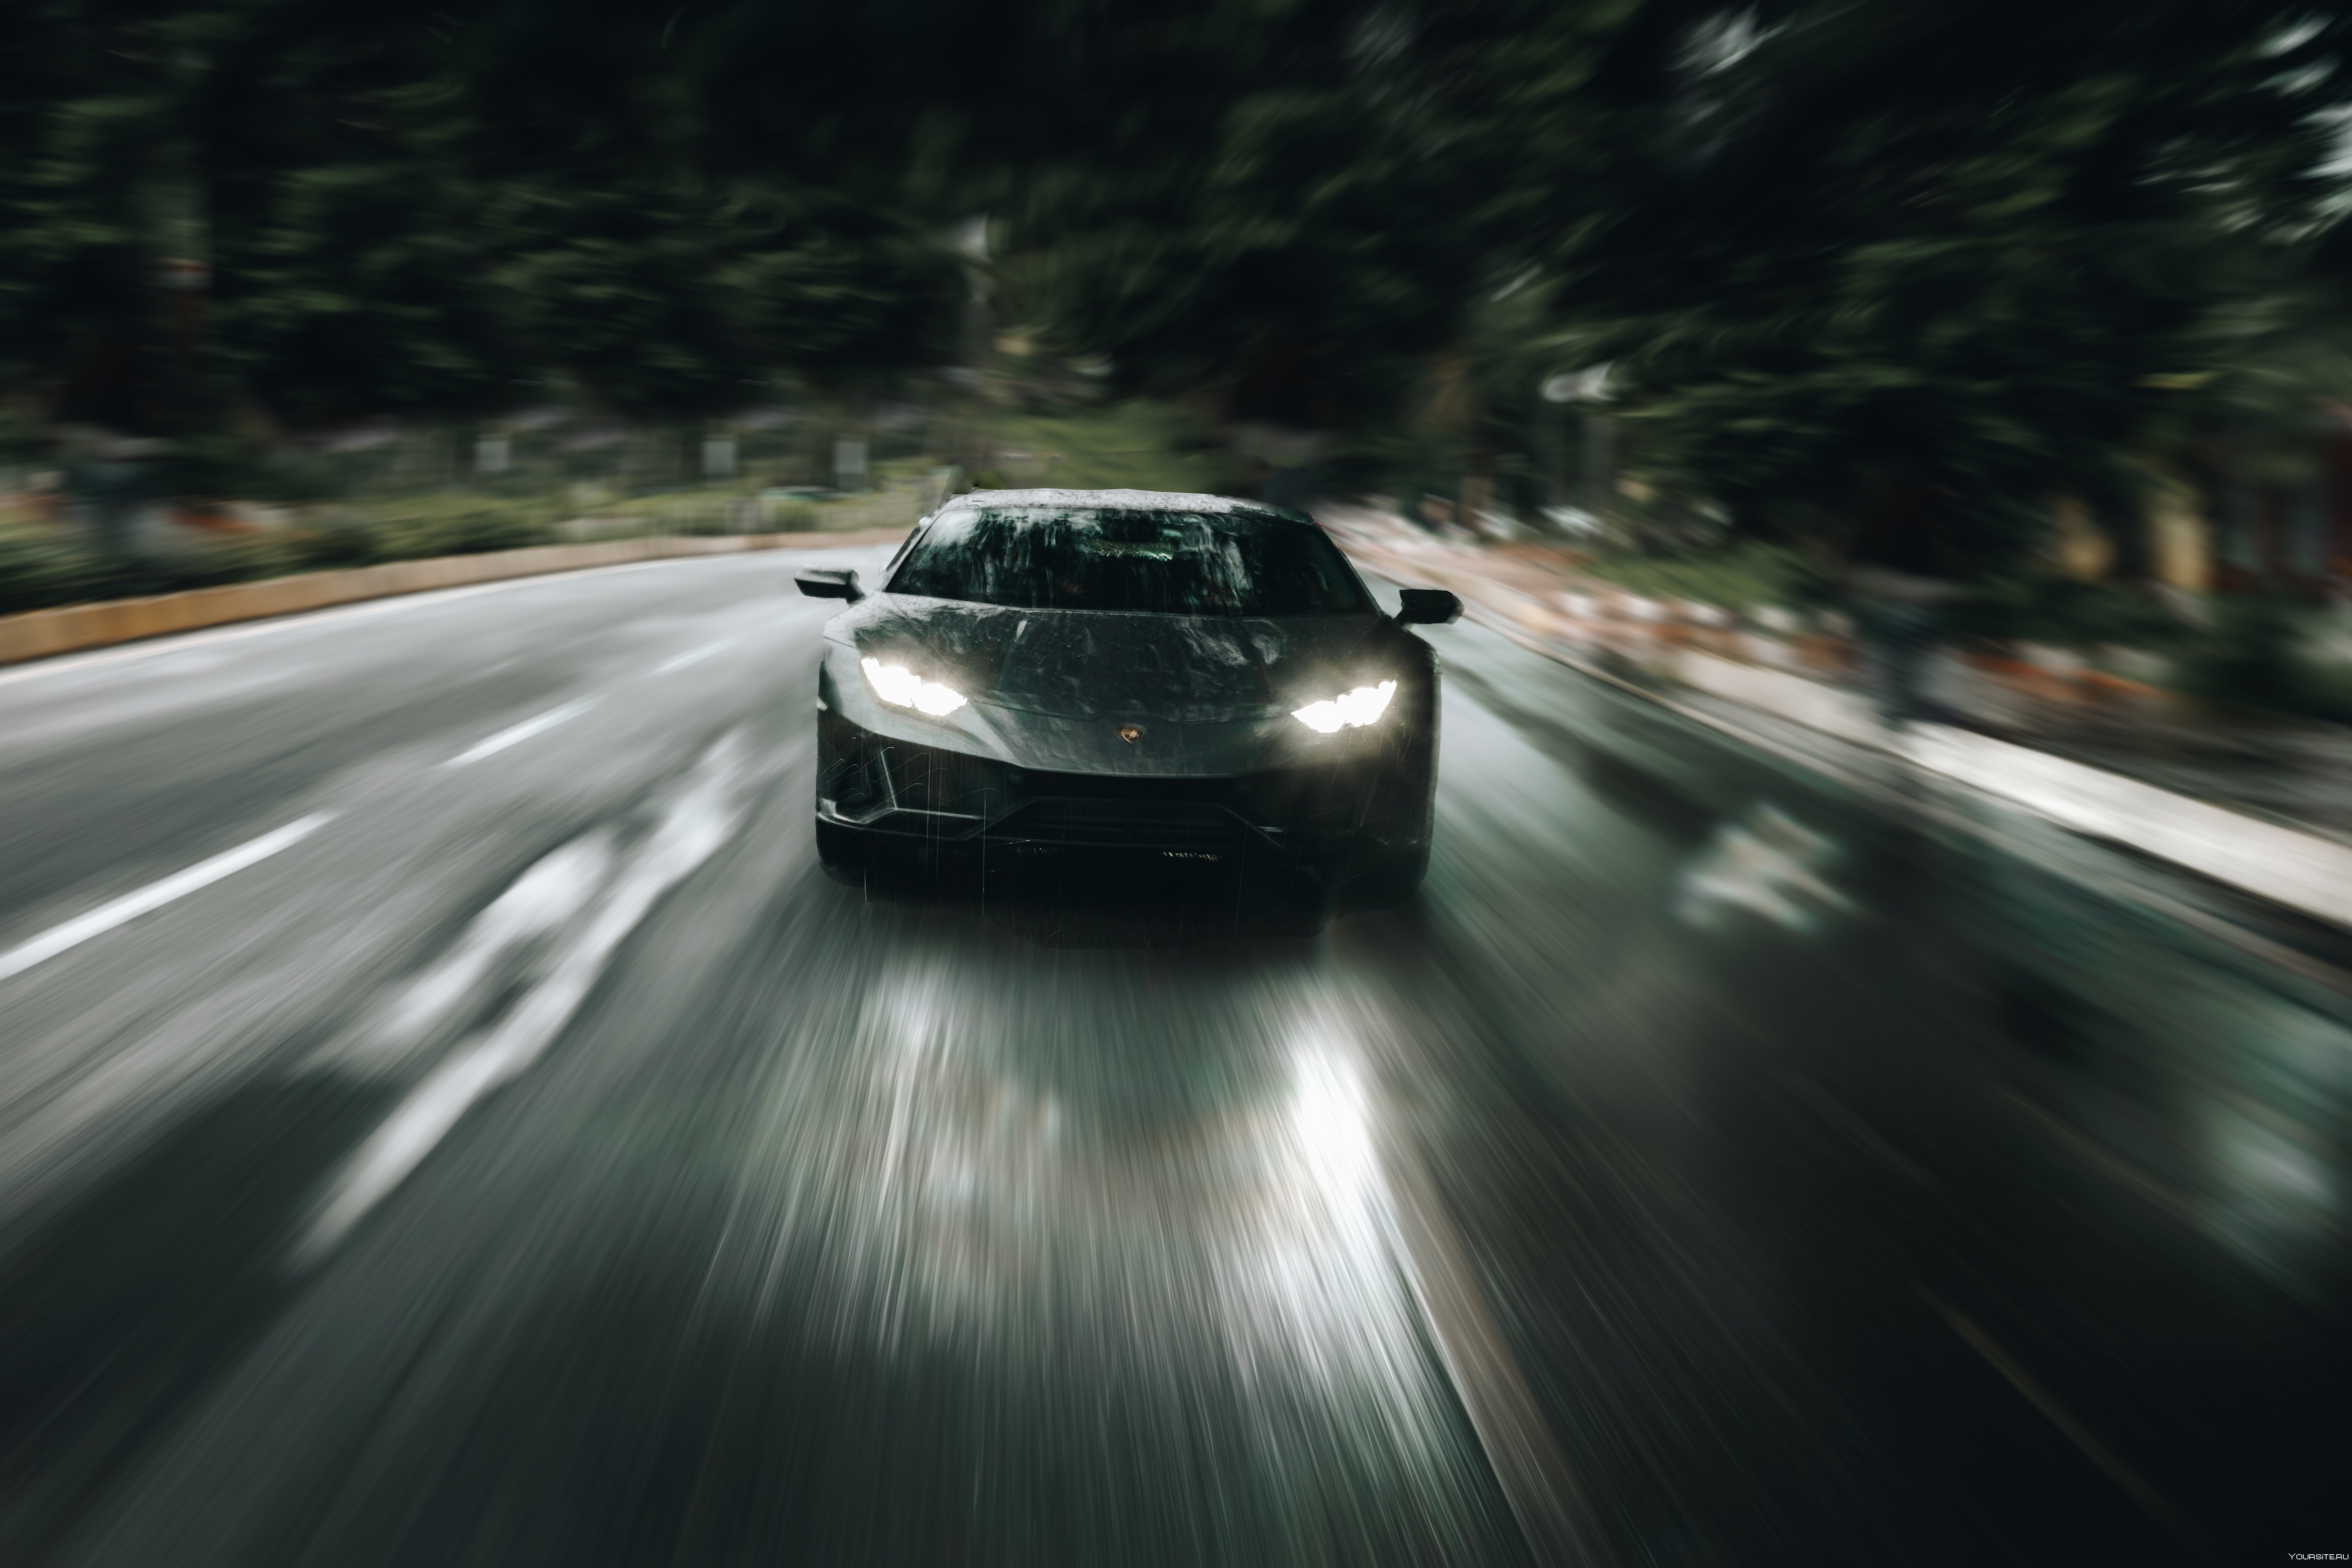 Машина катится на скорости. Ламборджини Хуракан. Lamborghini Huracan скорость. Машина на дороге. Машина в движении.